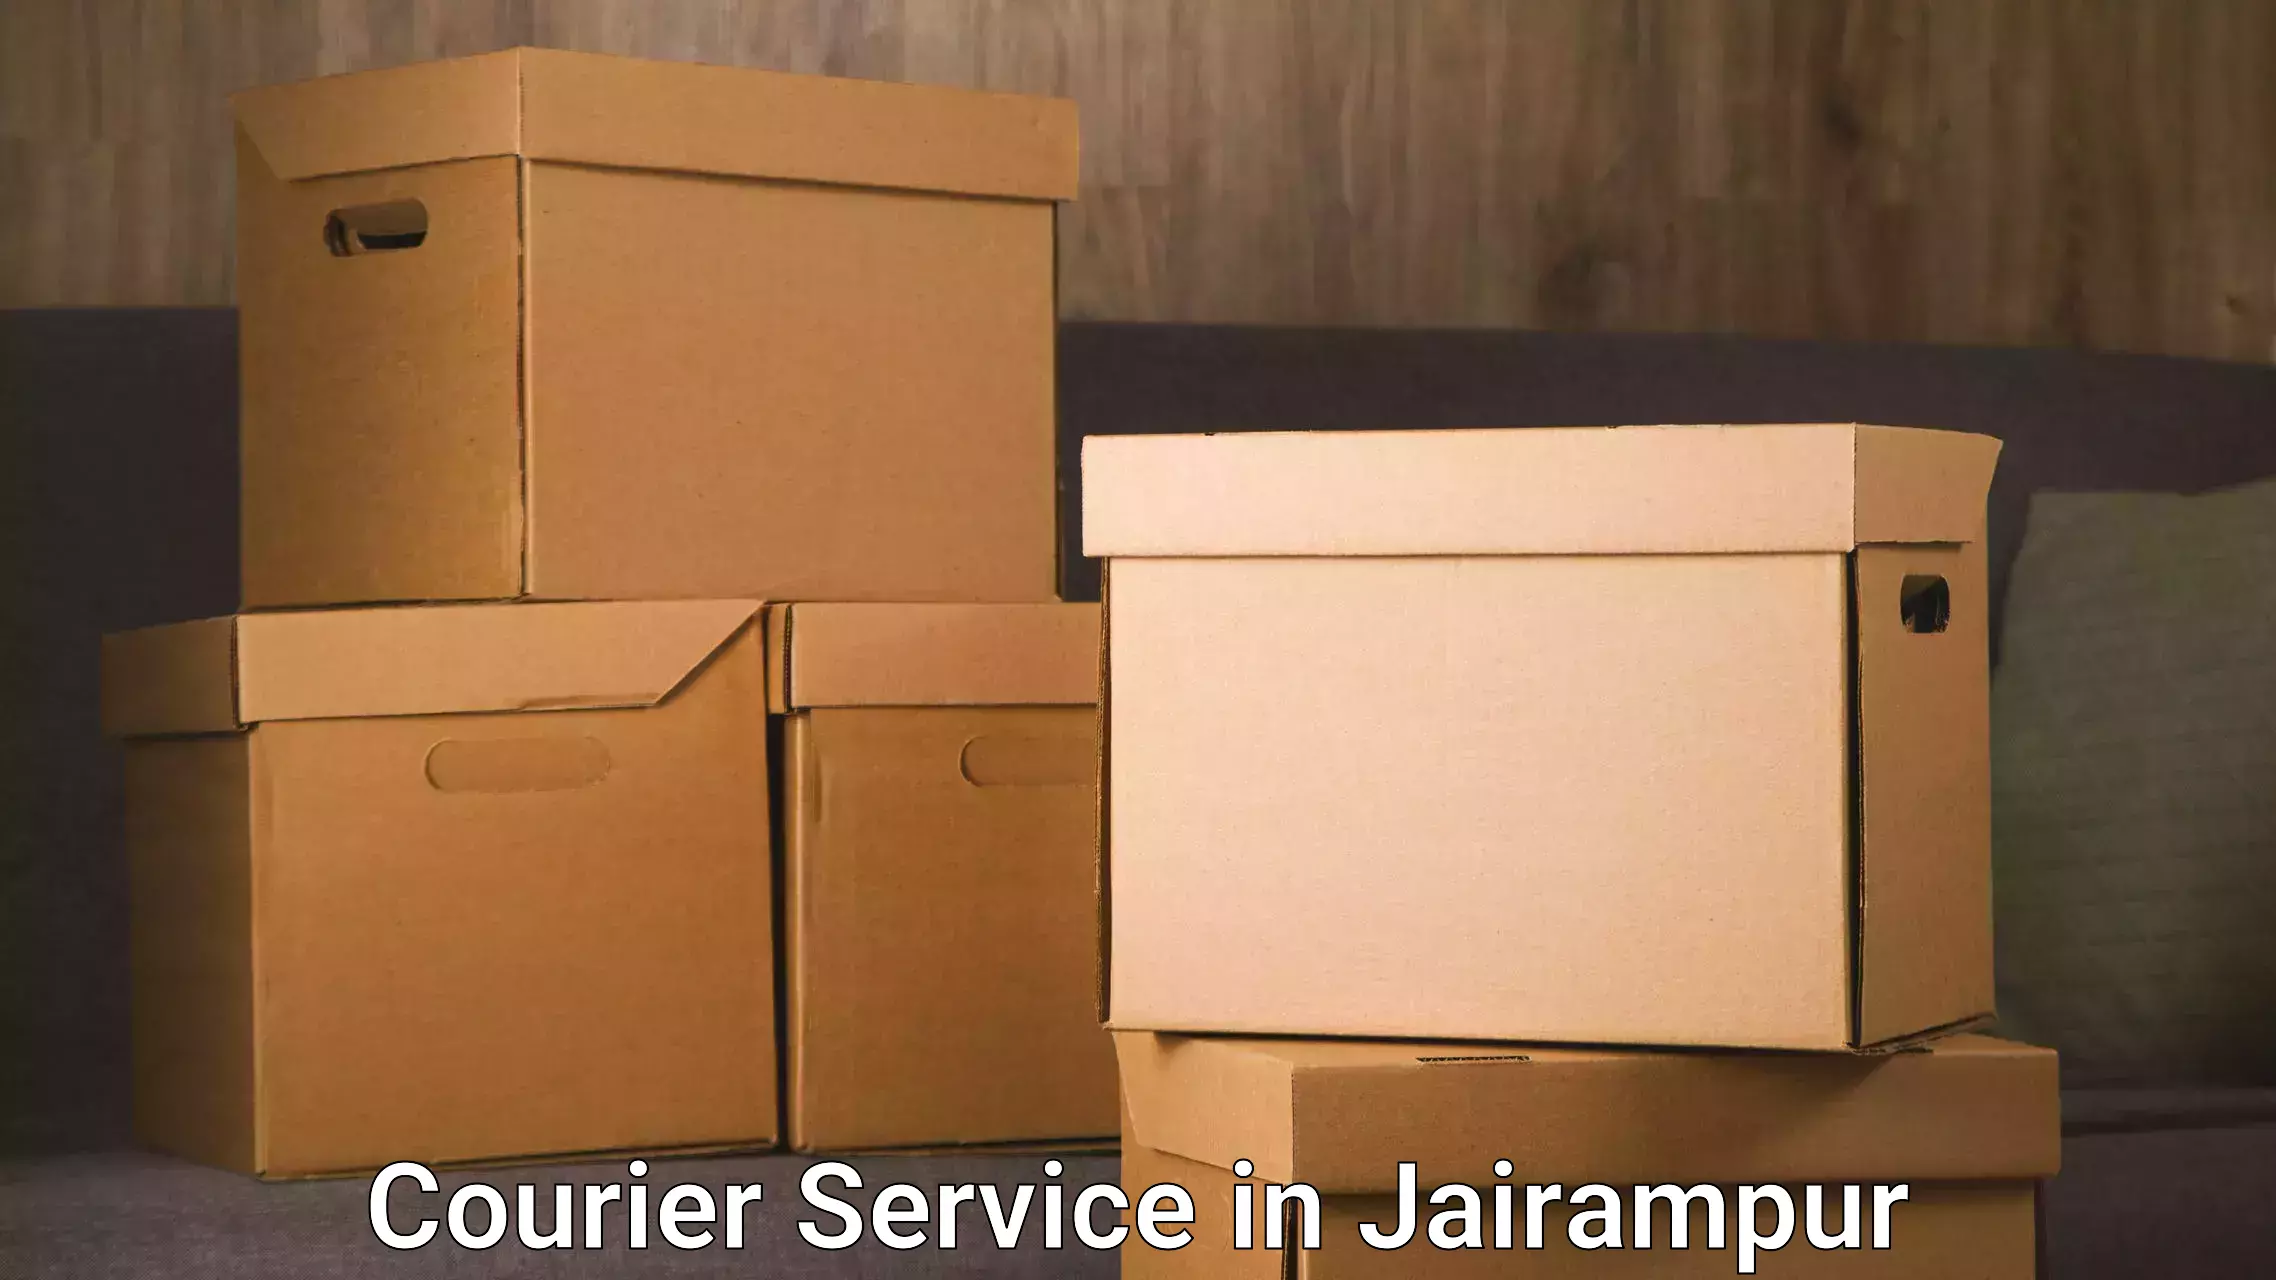 Scheduled delivery in Jairampur